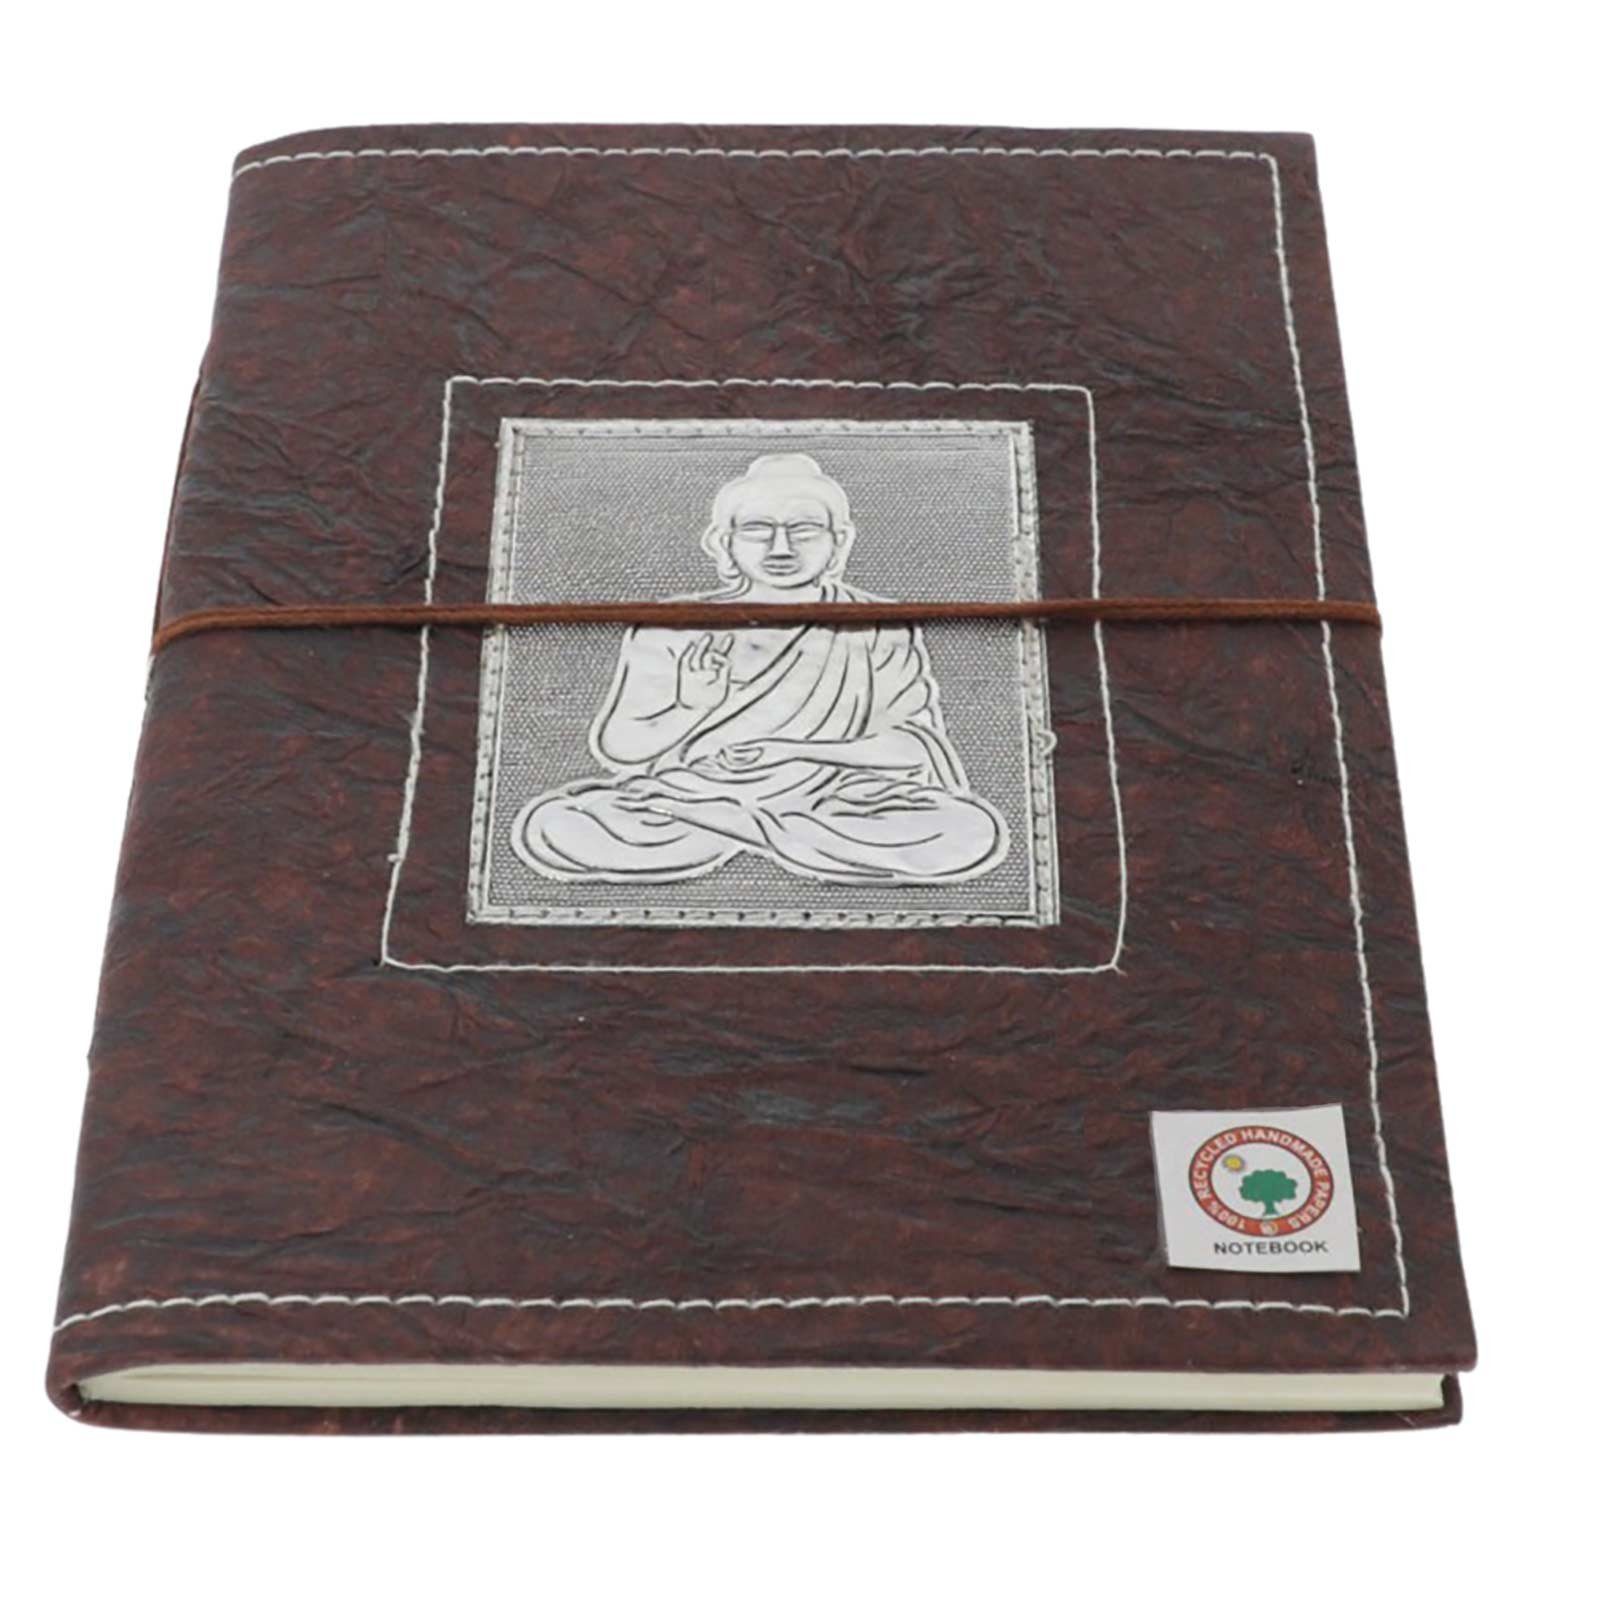 KUNST UND MAGIE Notizbuch Buddha handgefertigt-Geprägtes Poesiealbum Notizbuch 20x15cm Tagebuch